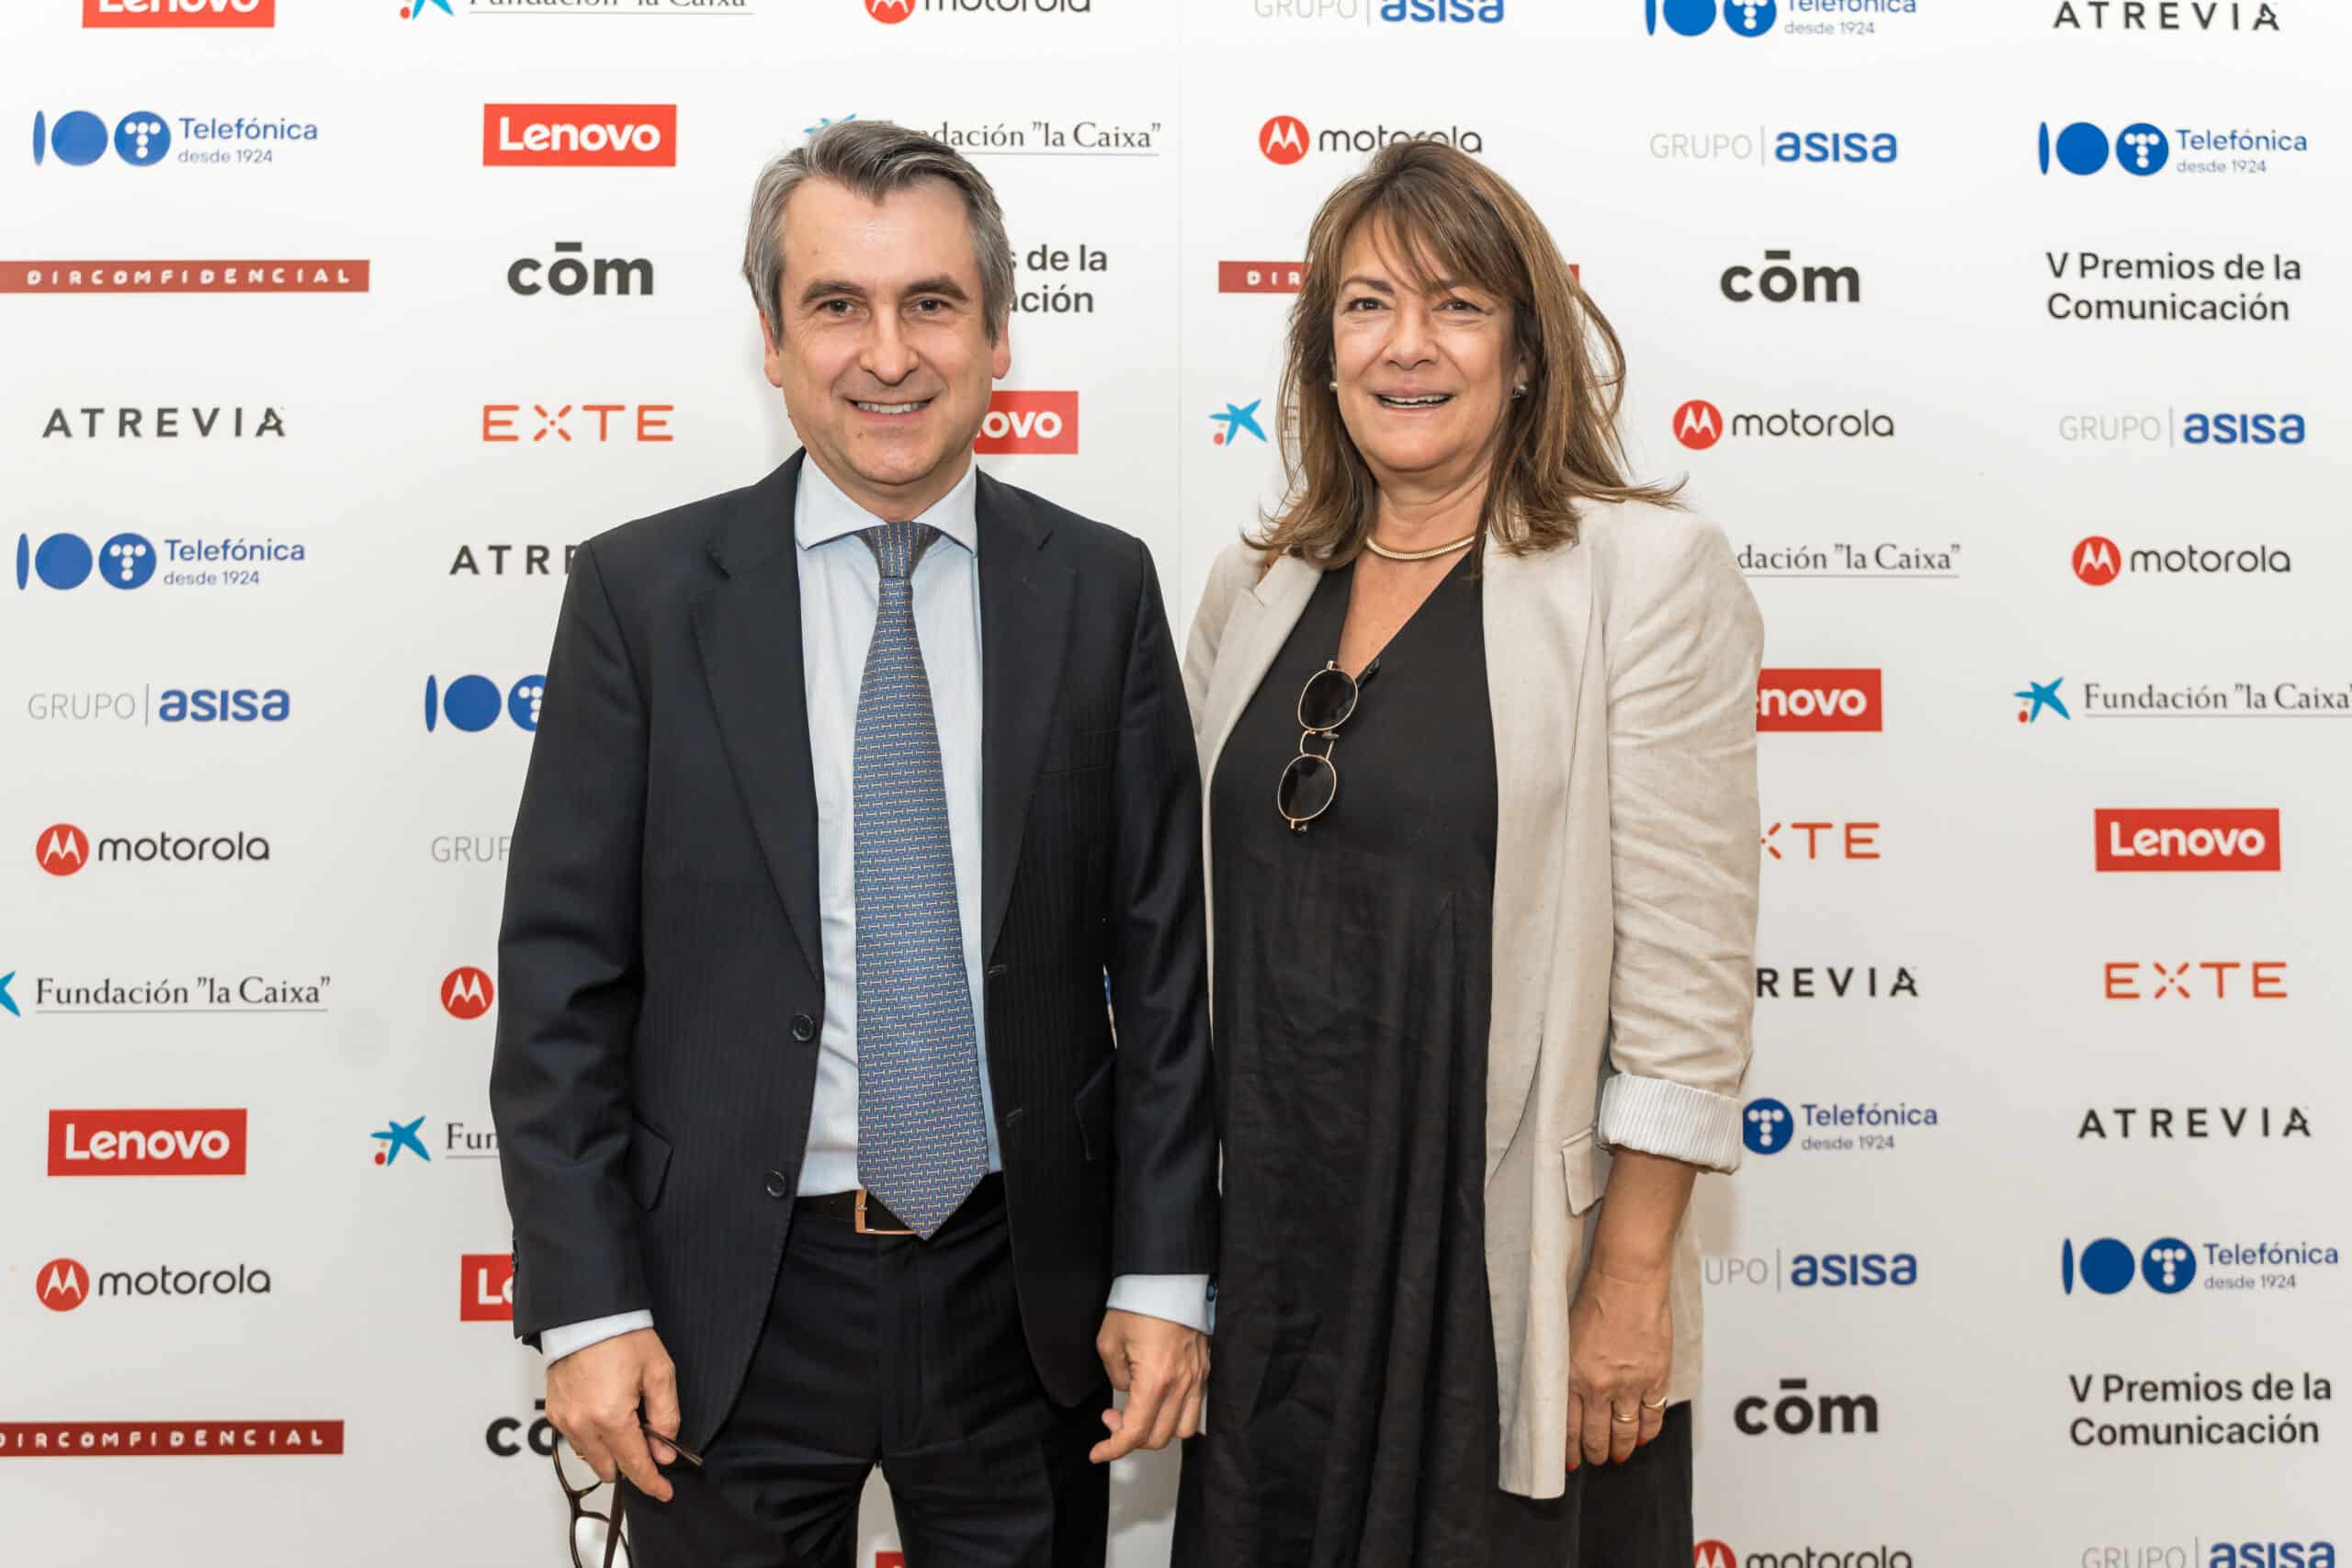 Higinio Martínez Gracia (OmnicomPRGroup España y Portugal) y Patricia Coronado (OmnicomPRGroup España)